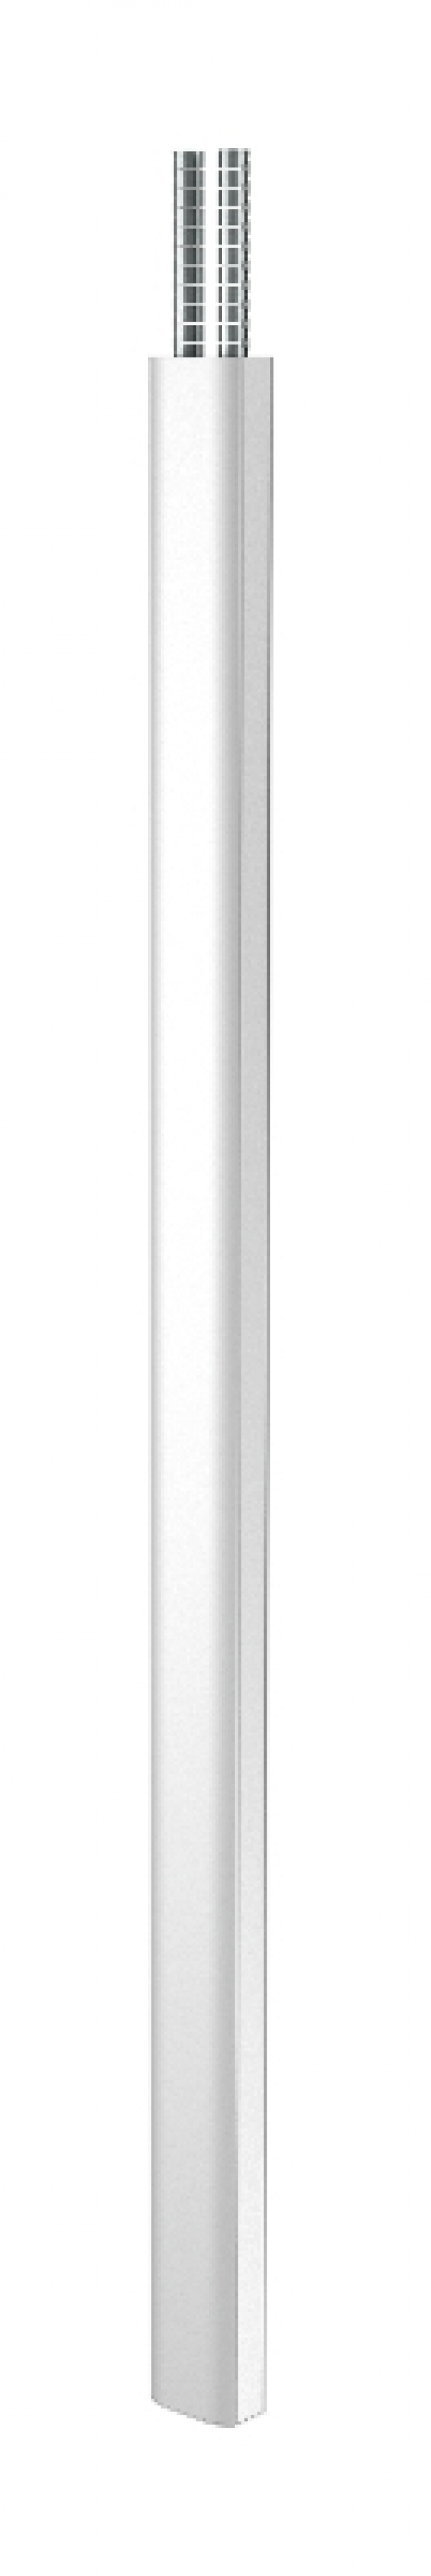 6289974 - OBO BETTERMANN Электромонтажная колонна 2,3-3,8 м 2-х сторонняя Modul45 80x130x2300 мм (алюминий,белый) (ISSDM45FRW).